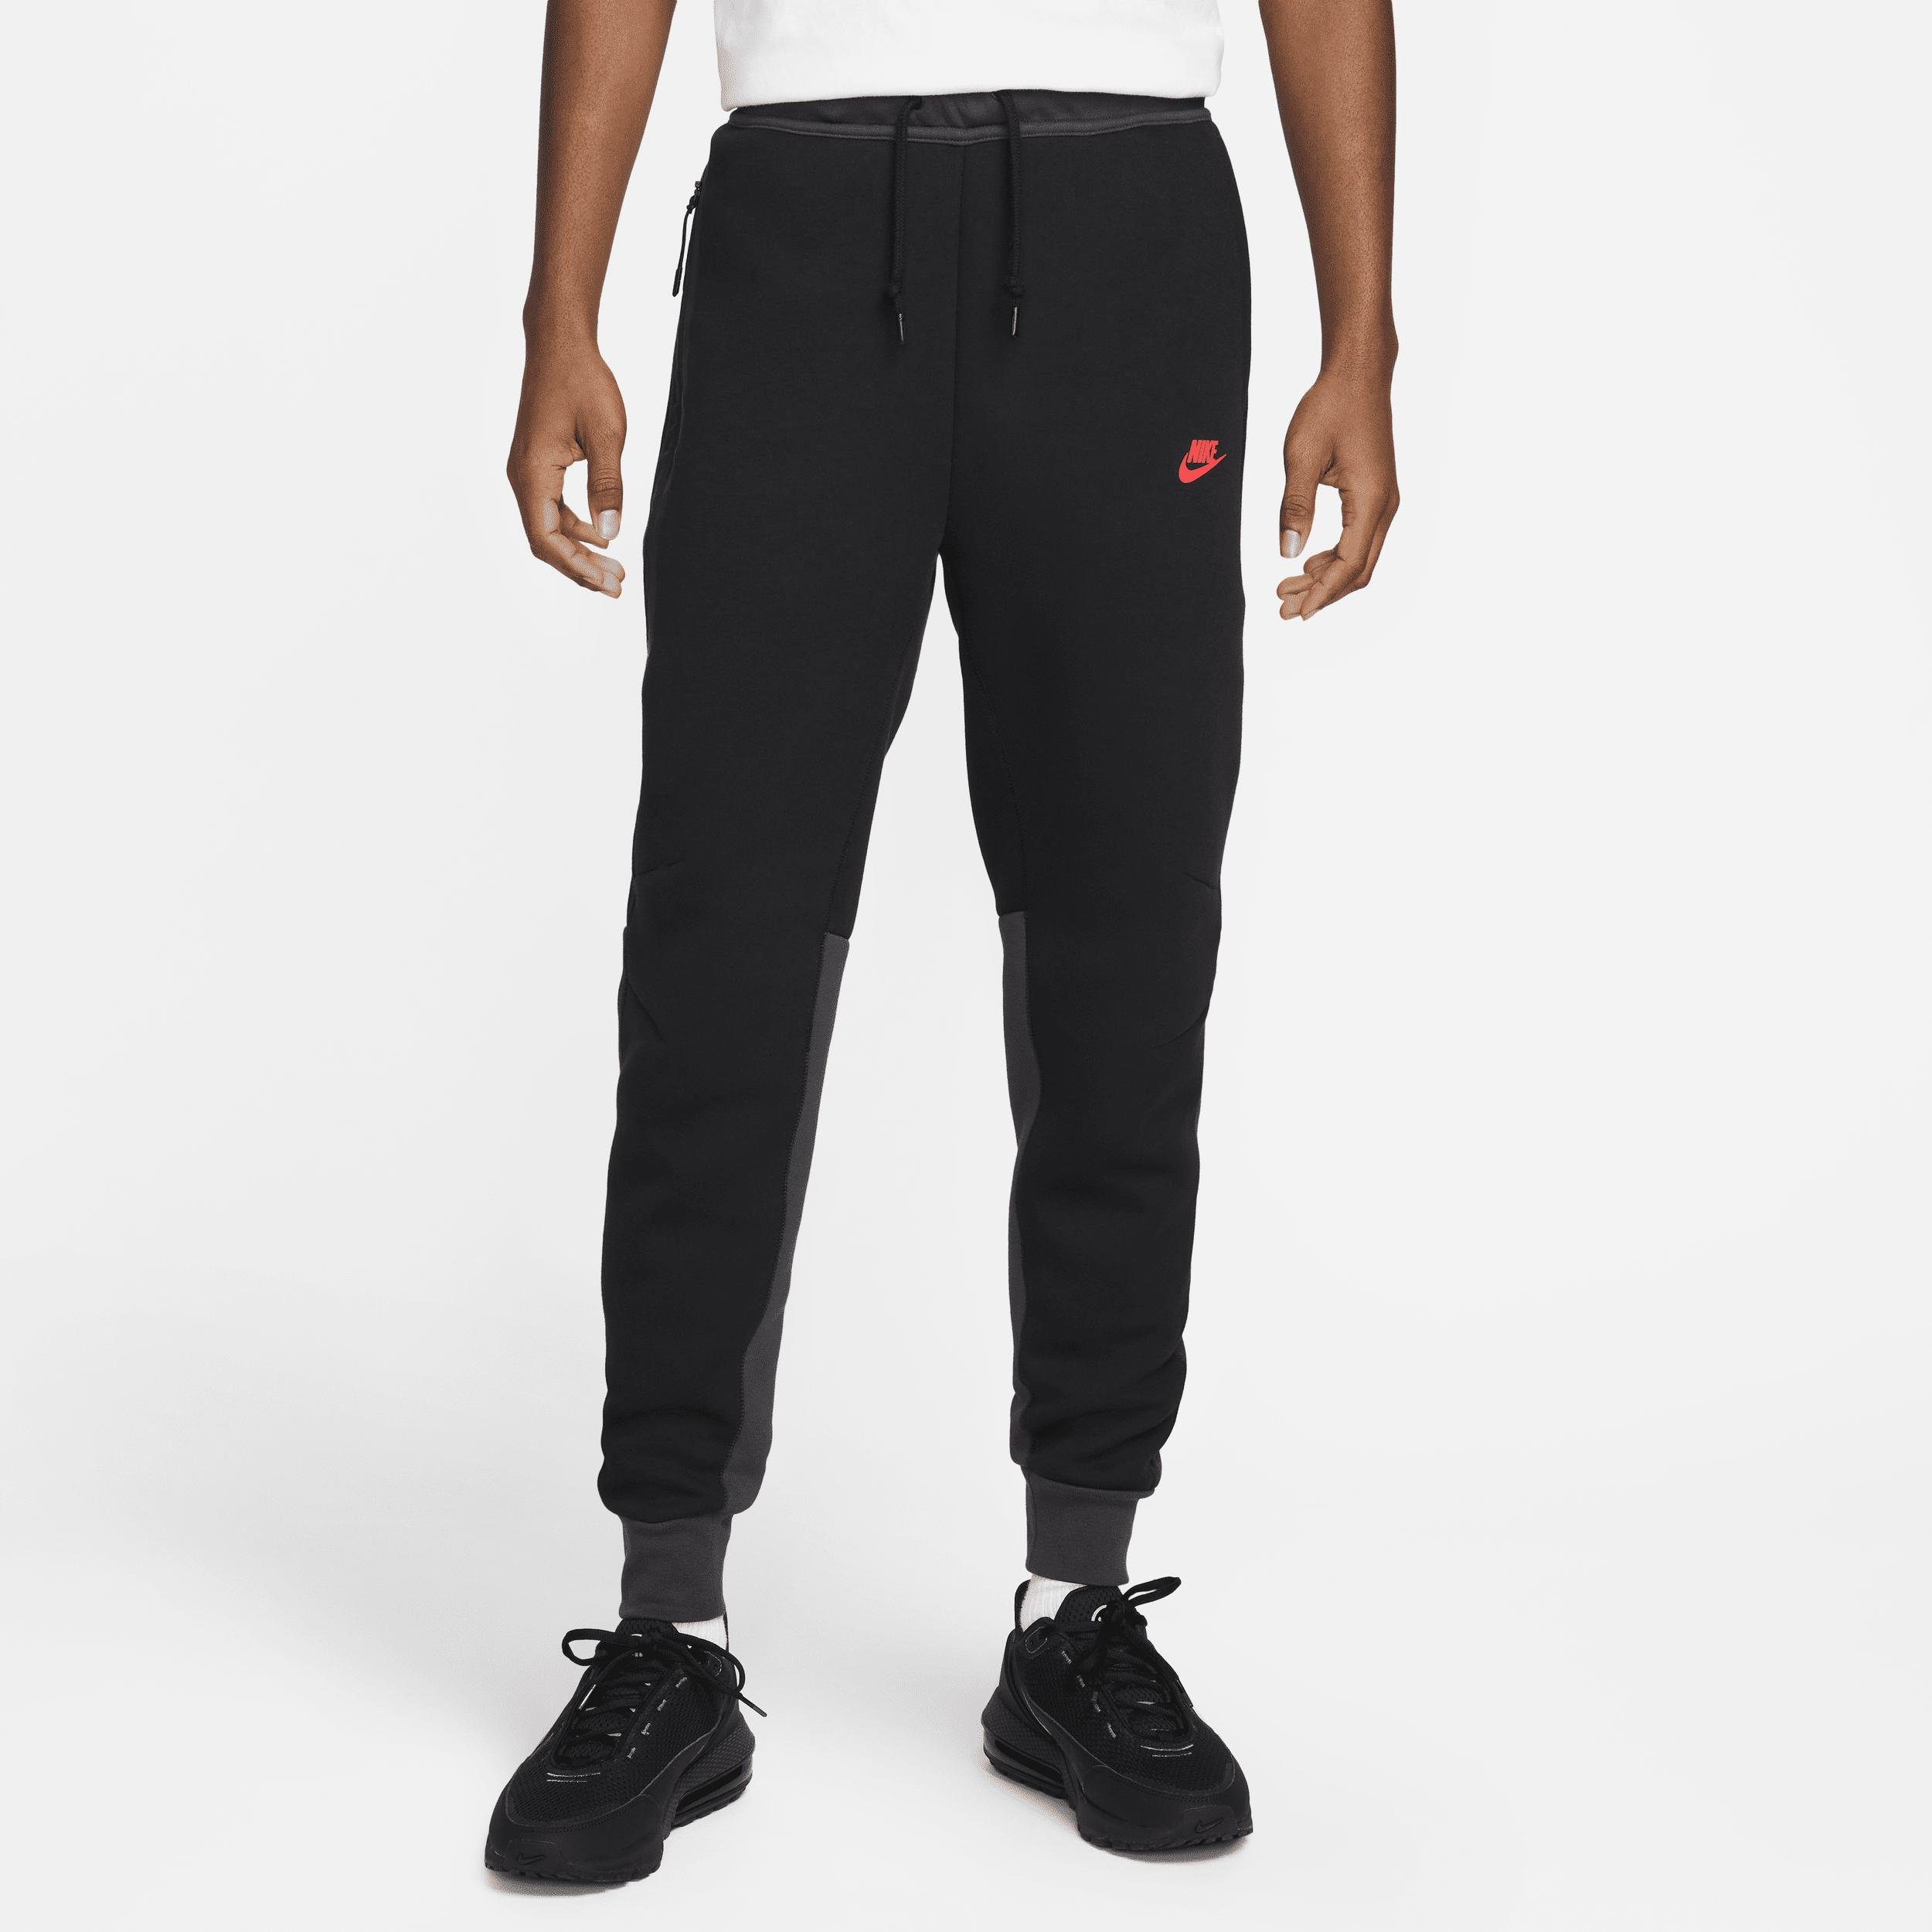 Men's Nike Sportswear Tech Fleece Jogger Pants by NIKE